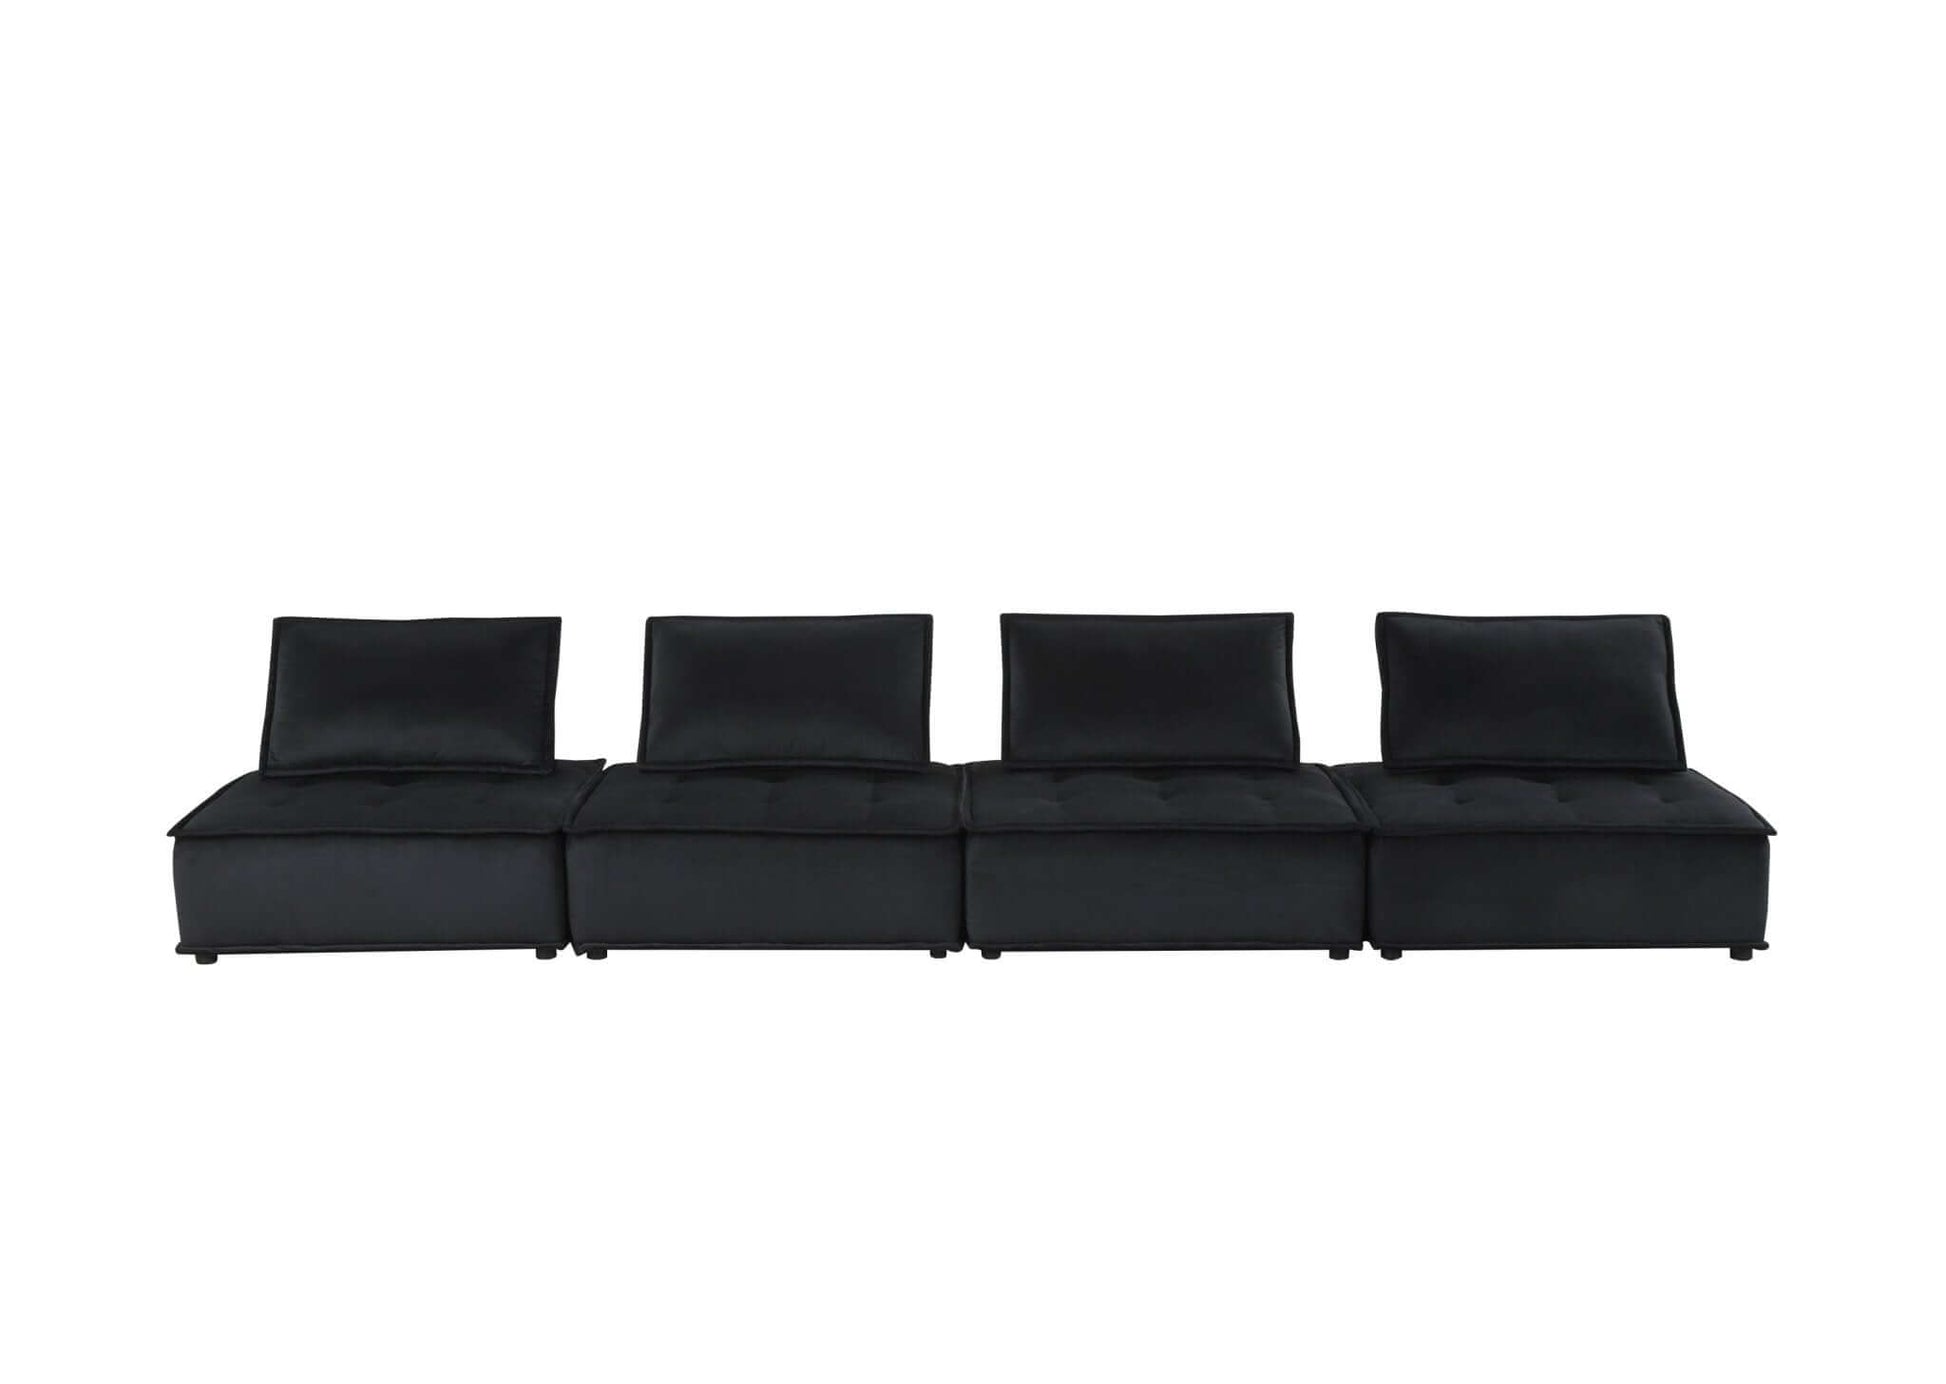 Anna Velvet Modular Sectional Sofa in Gray or Black, Fully Customizable - Revel Sofa 